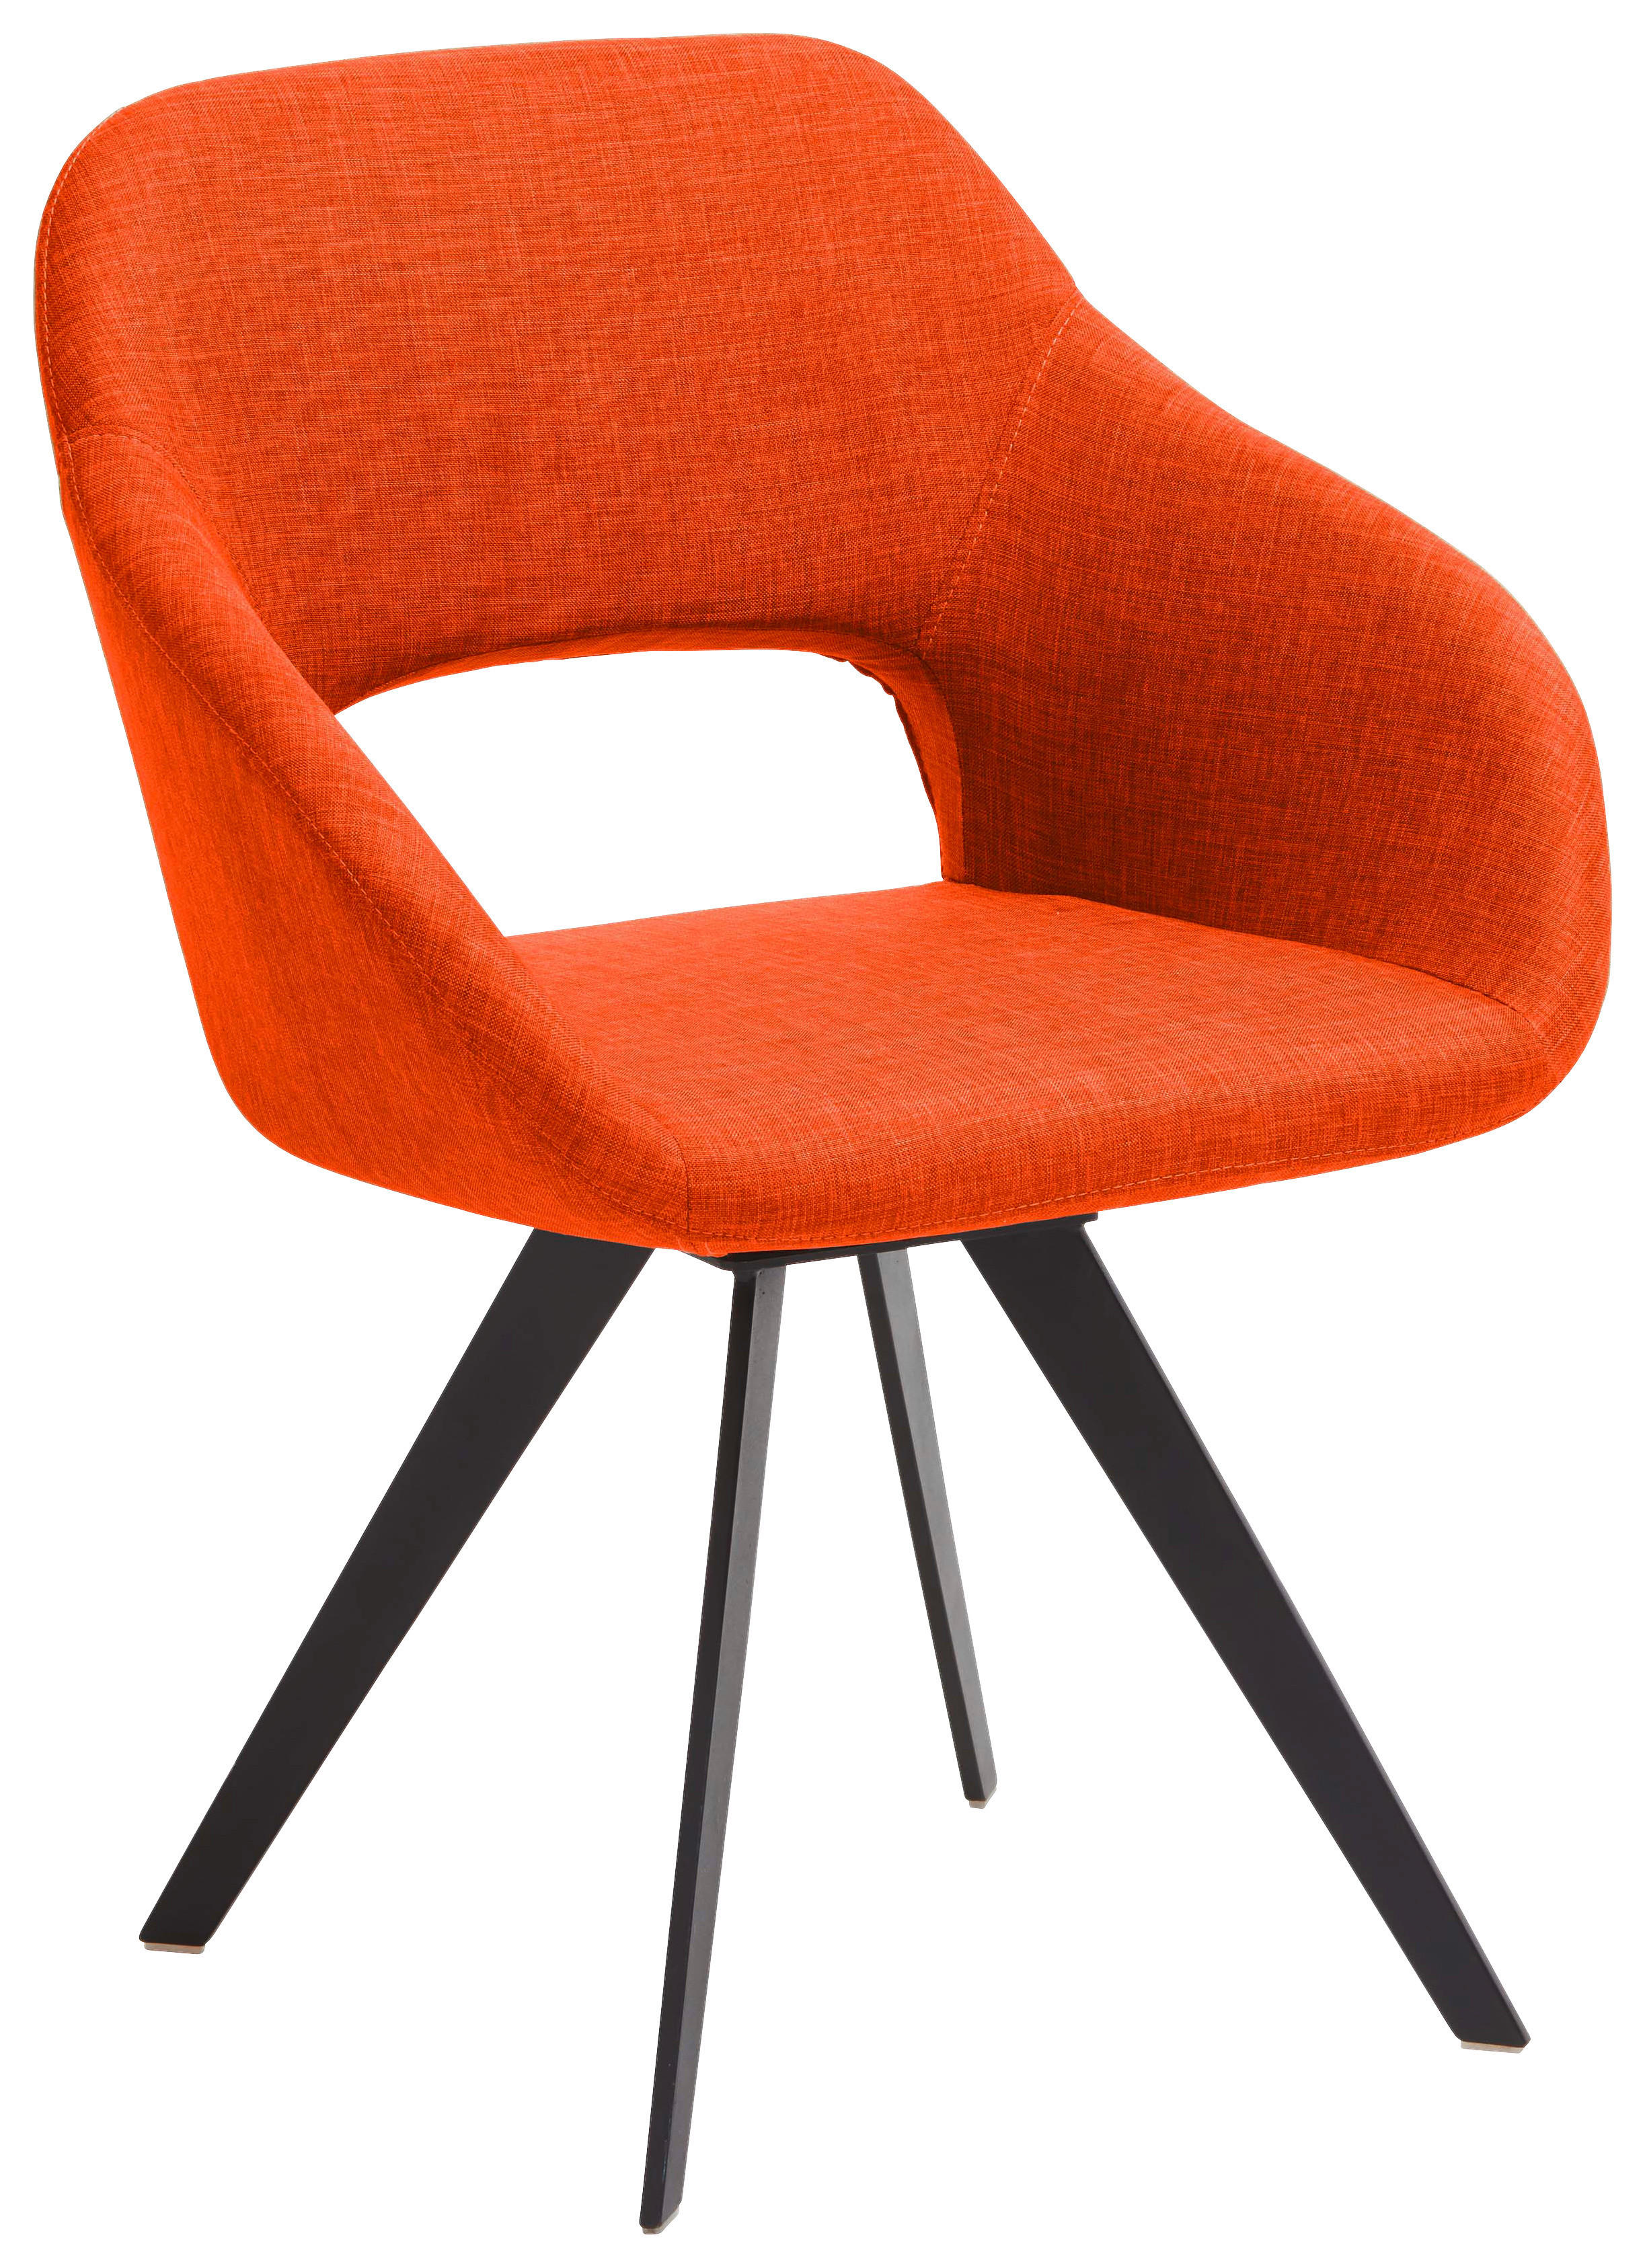 ARMLEHNSTUHL Textilgeflecht Orange, Schwarz  - Schwarz/Orange, Design, Textil/Metall (62/83/59cm) - Valnatura